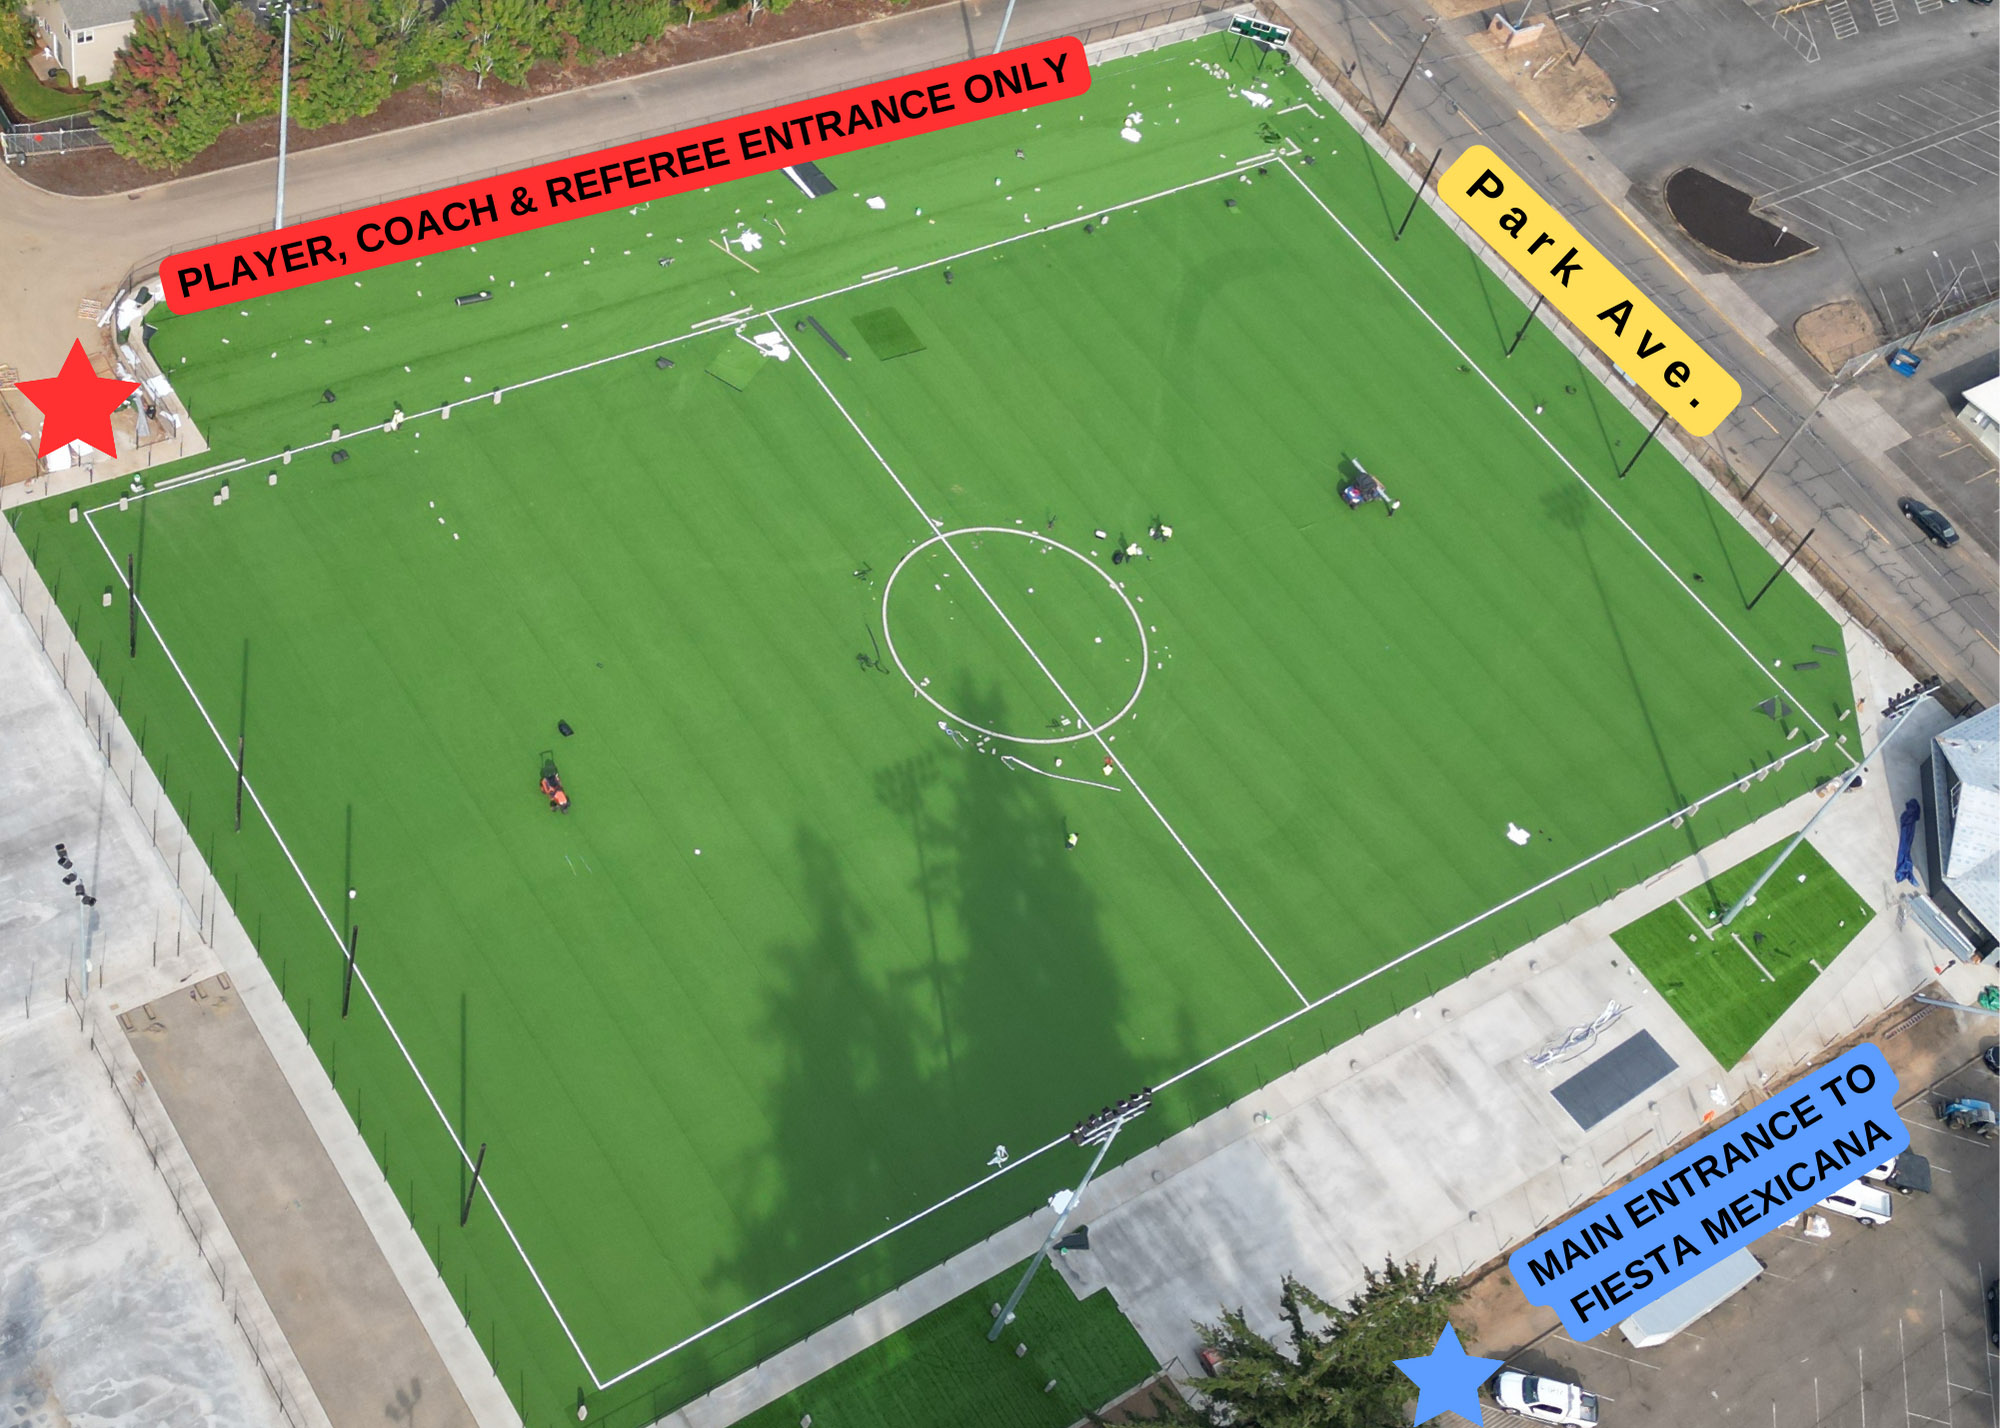 Urban Rec Stadium Series Coed Soccer tournament